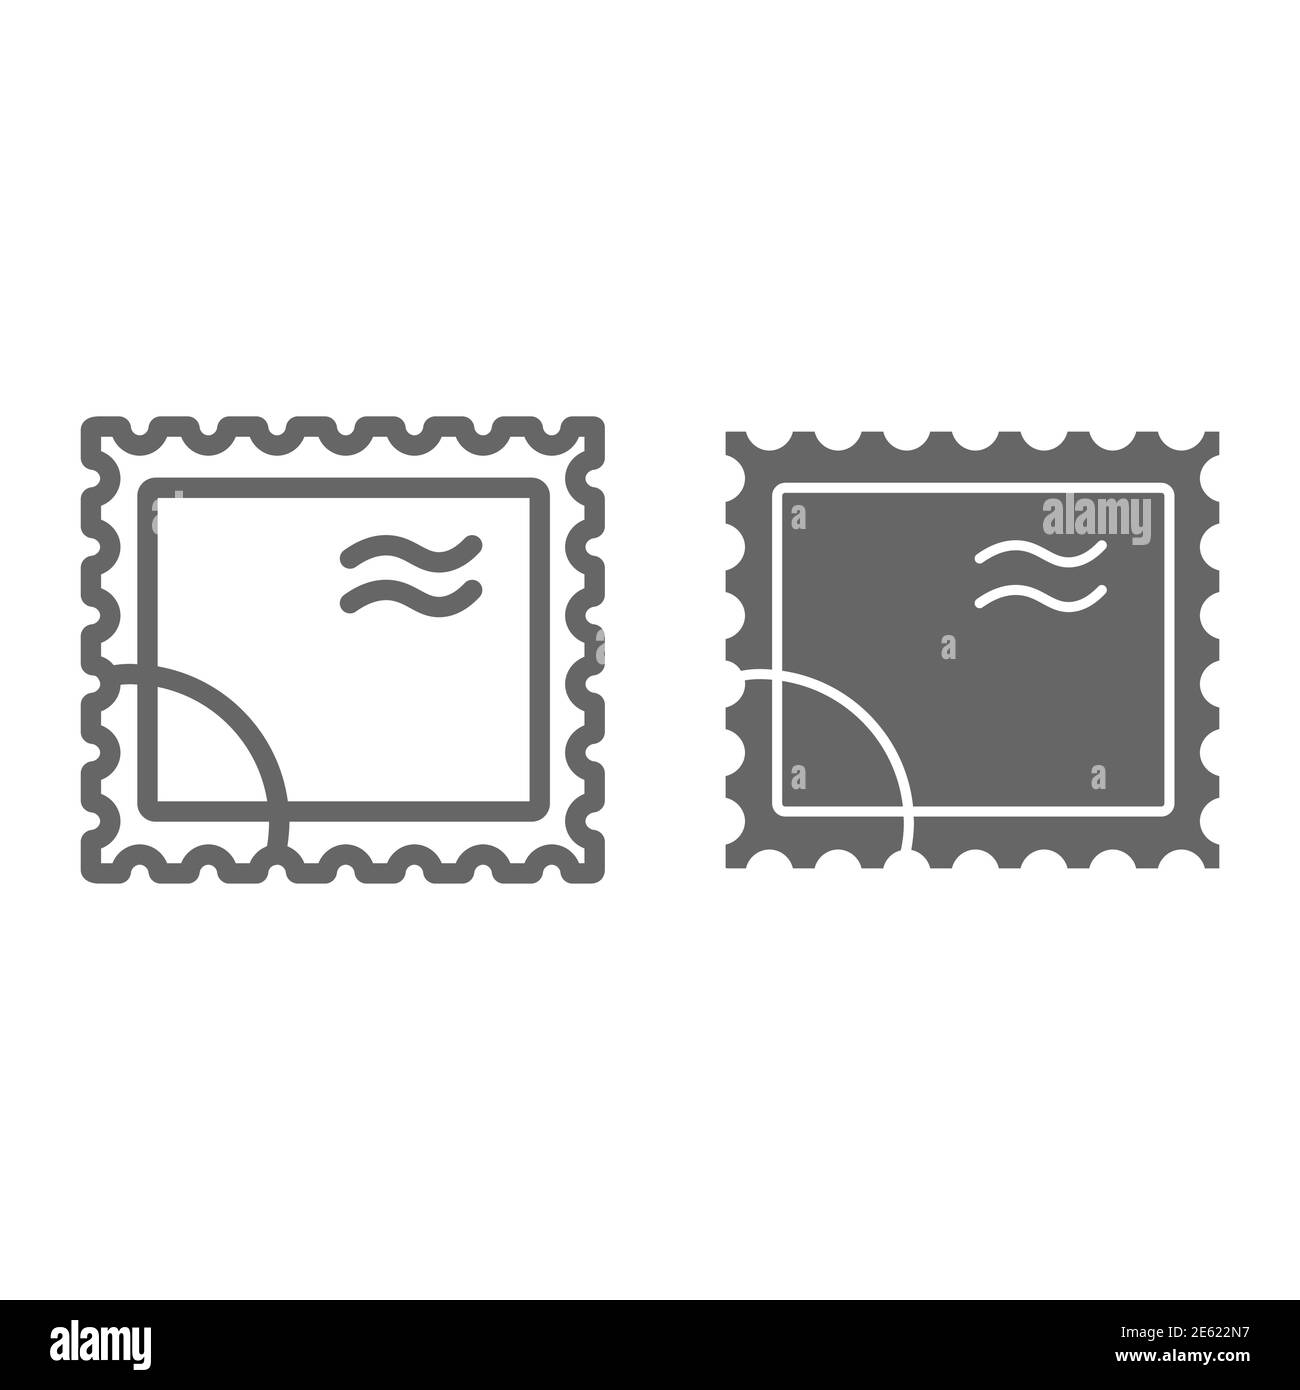 Ligne de cachet postal et icône pleine, symbole de livraison, signe vectoriel de cachet rétro papier sur fond blanc, icône de cachet de poste dans le style de contour pour mobile Illustration de Vecteur